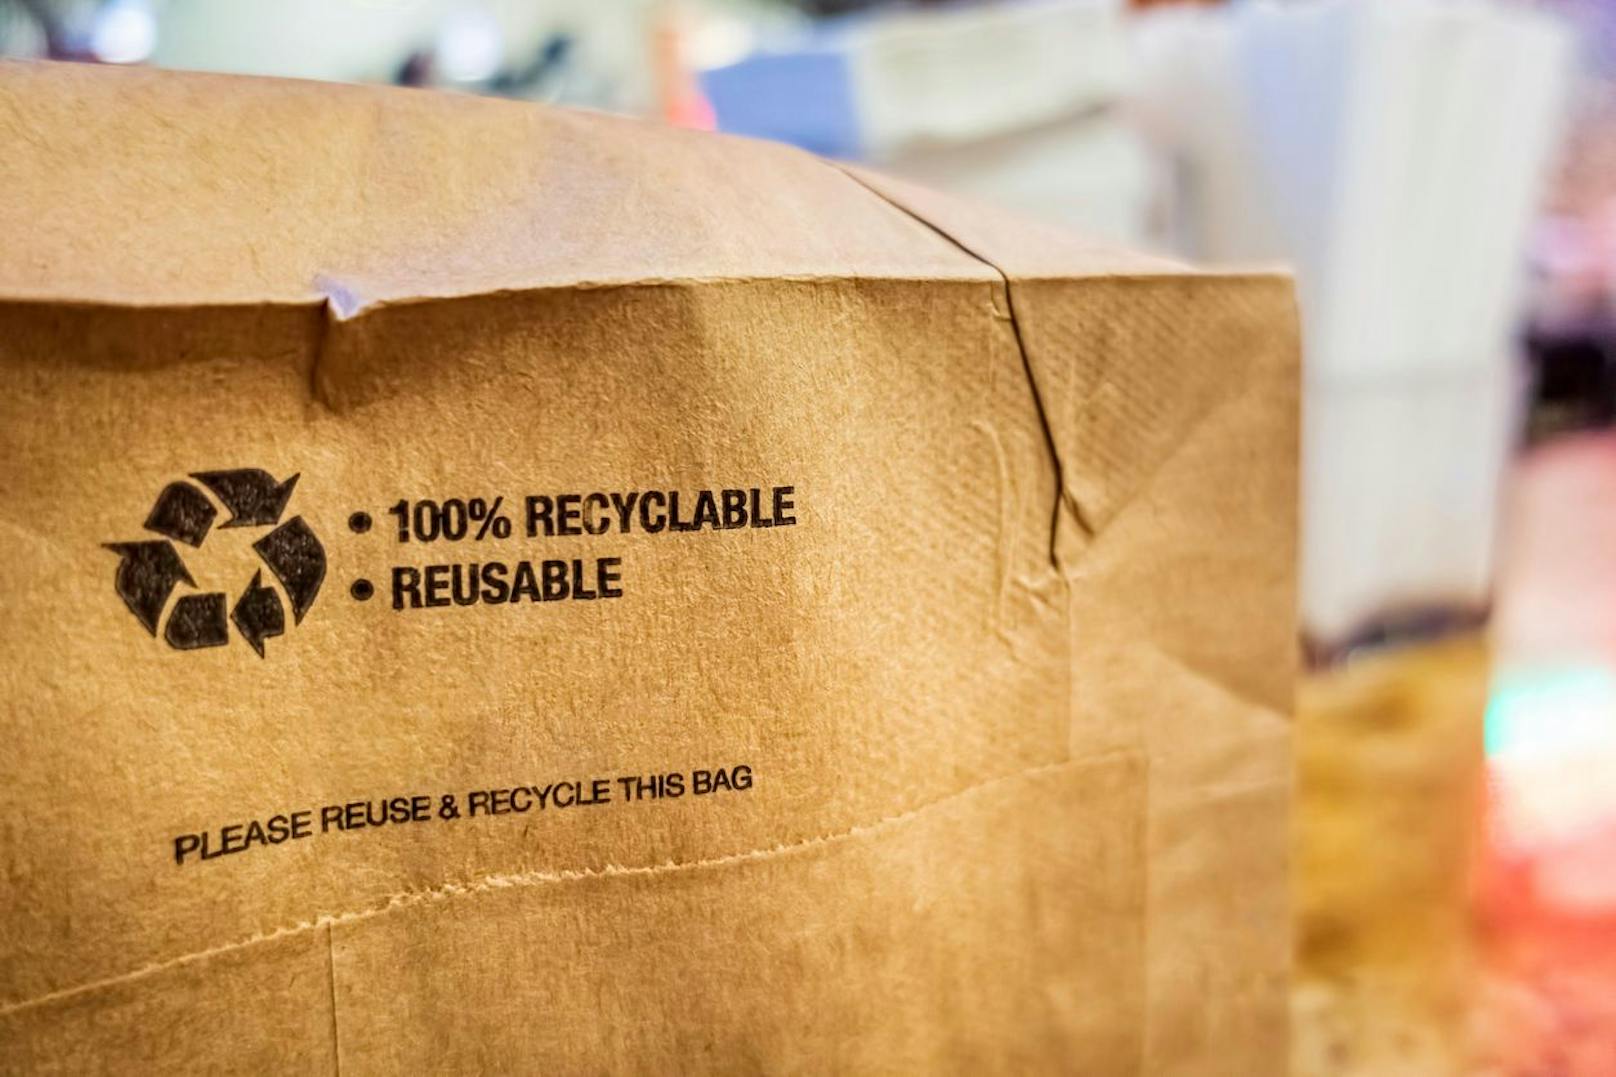 Das Verpackungsmaterial kann eingespart werden, in dem es aus umweltfreundlichen Materialien hergestellt und mehrmals verwendet wird.